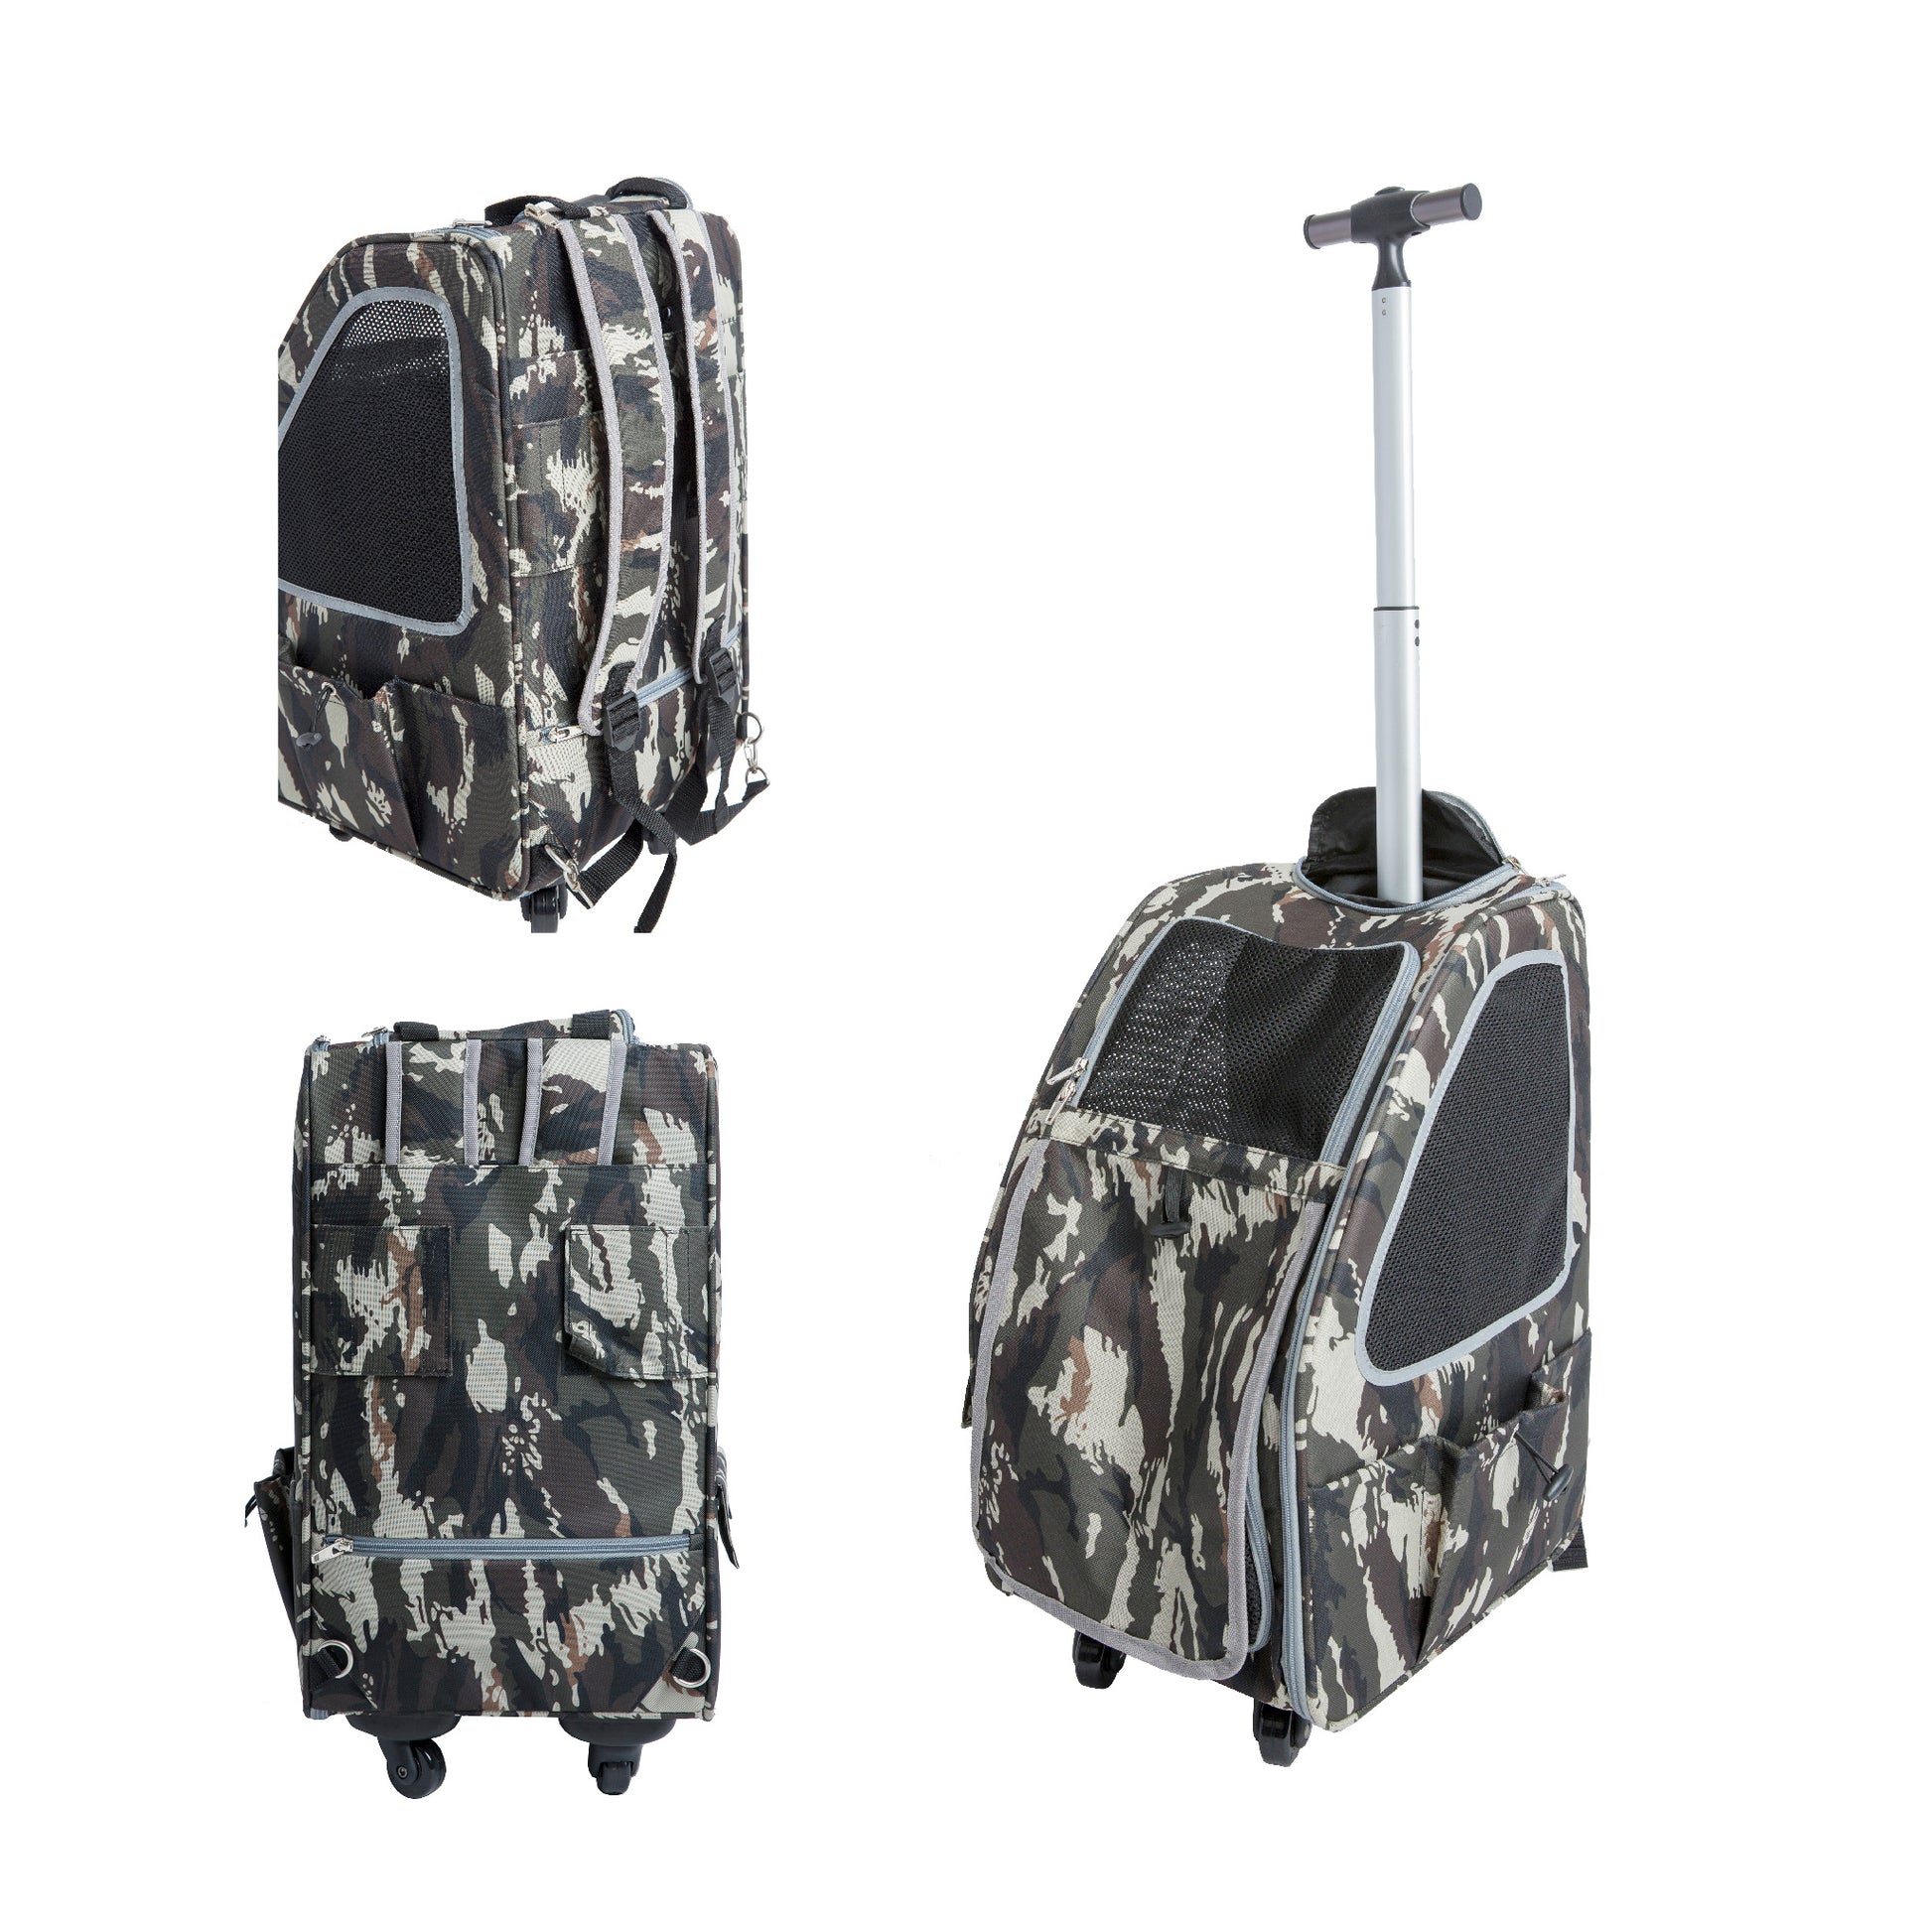 Cat Carrier Front Pack Transport Bag Travel Backpack